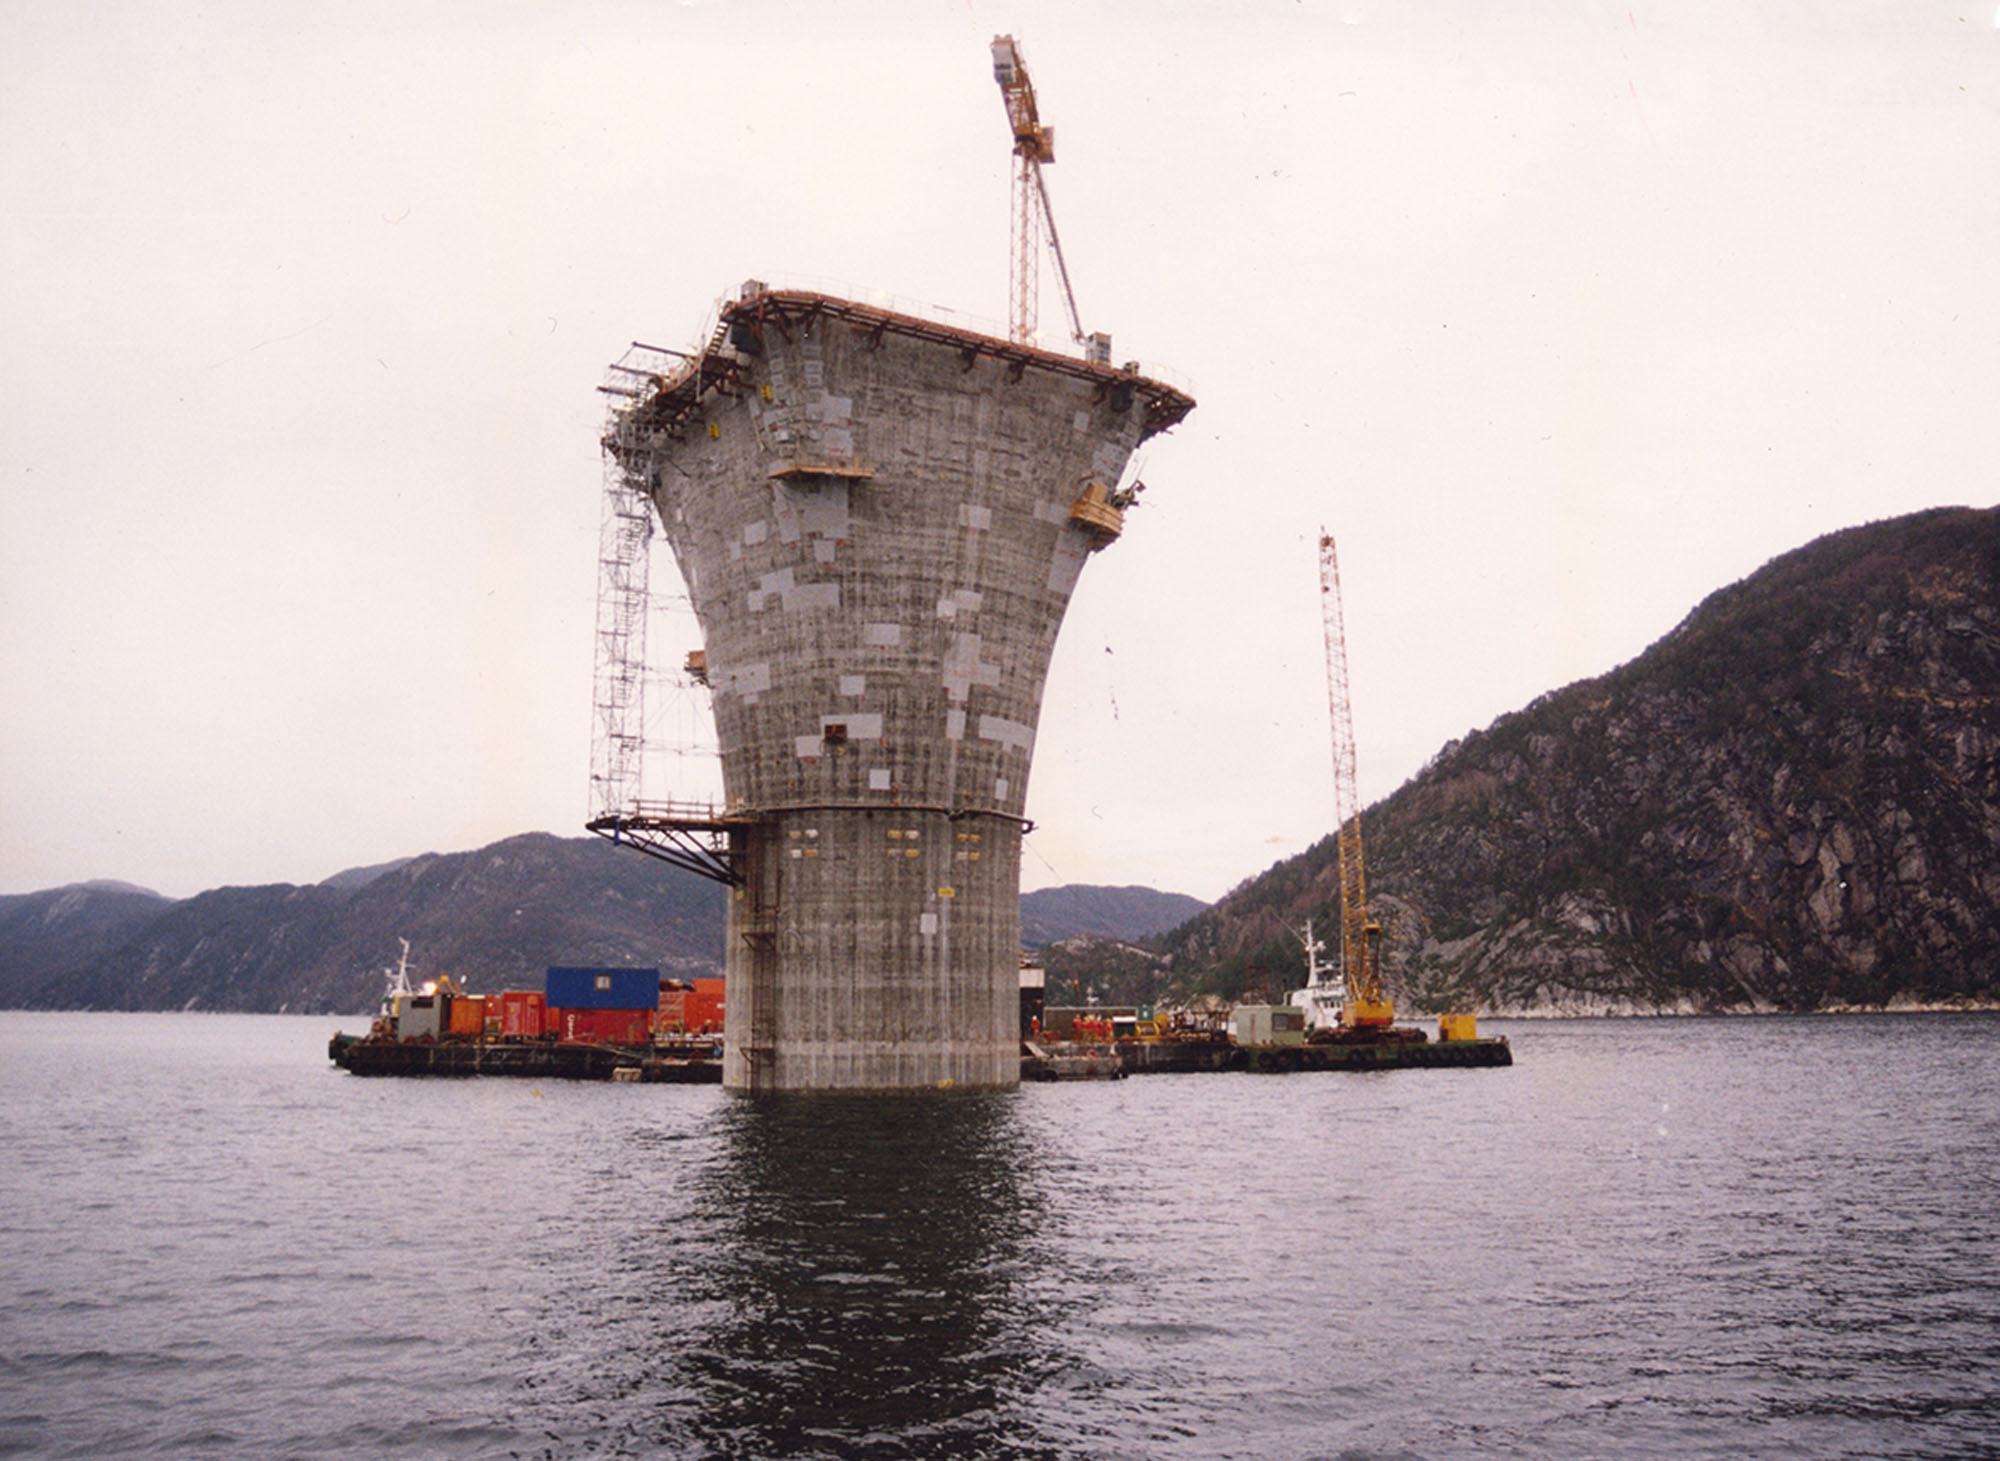 26.mars 1993 ble dekket koblet sammen med betongunderstellet i den dype fjorden i Vats. Foto: Ukjent